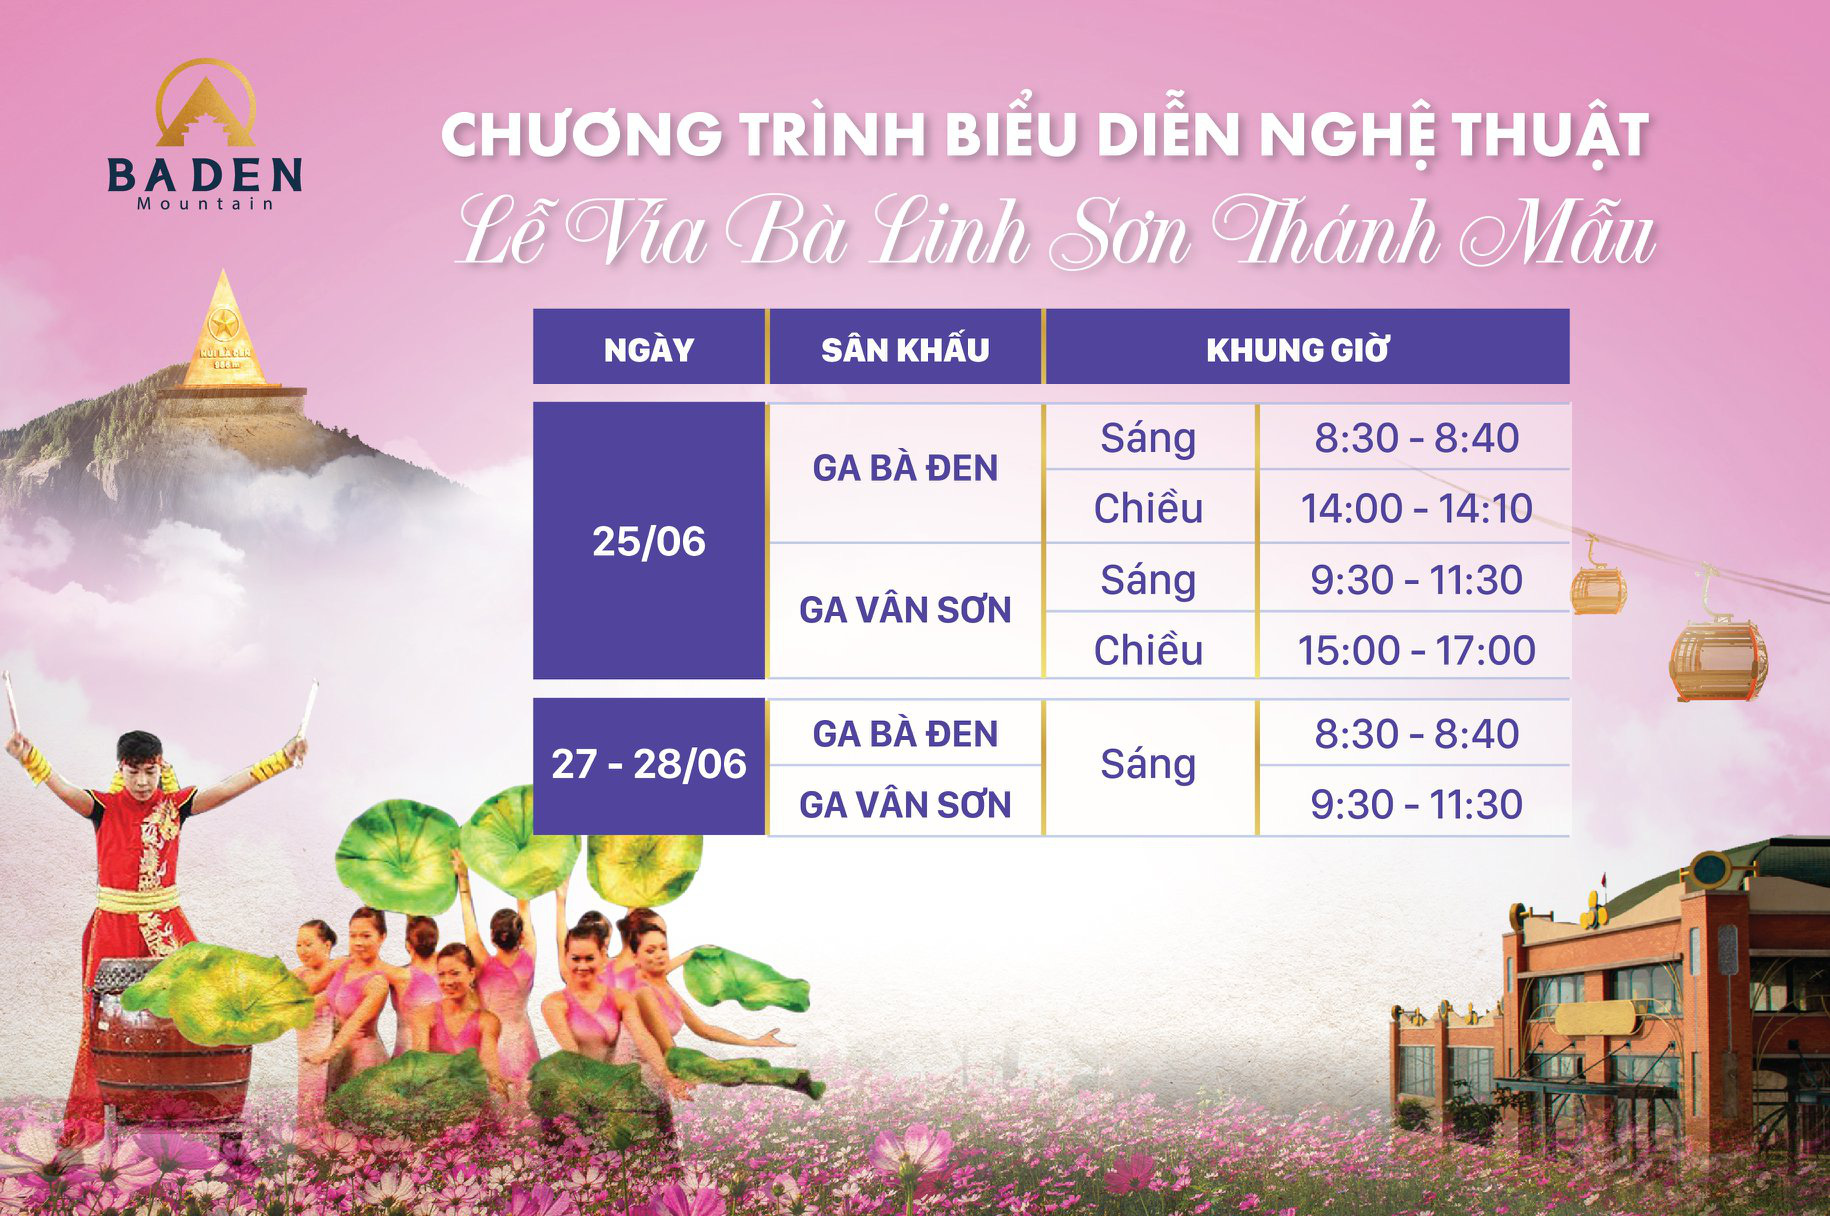 Tây Ninh đón lễ hội Vía Bà với nhiều hoạt động hấp dẫn - Ảnh 7.